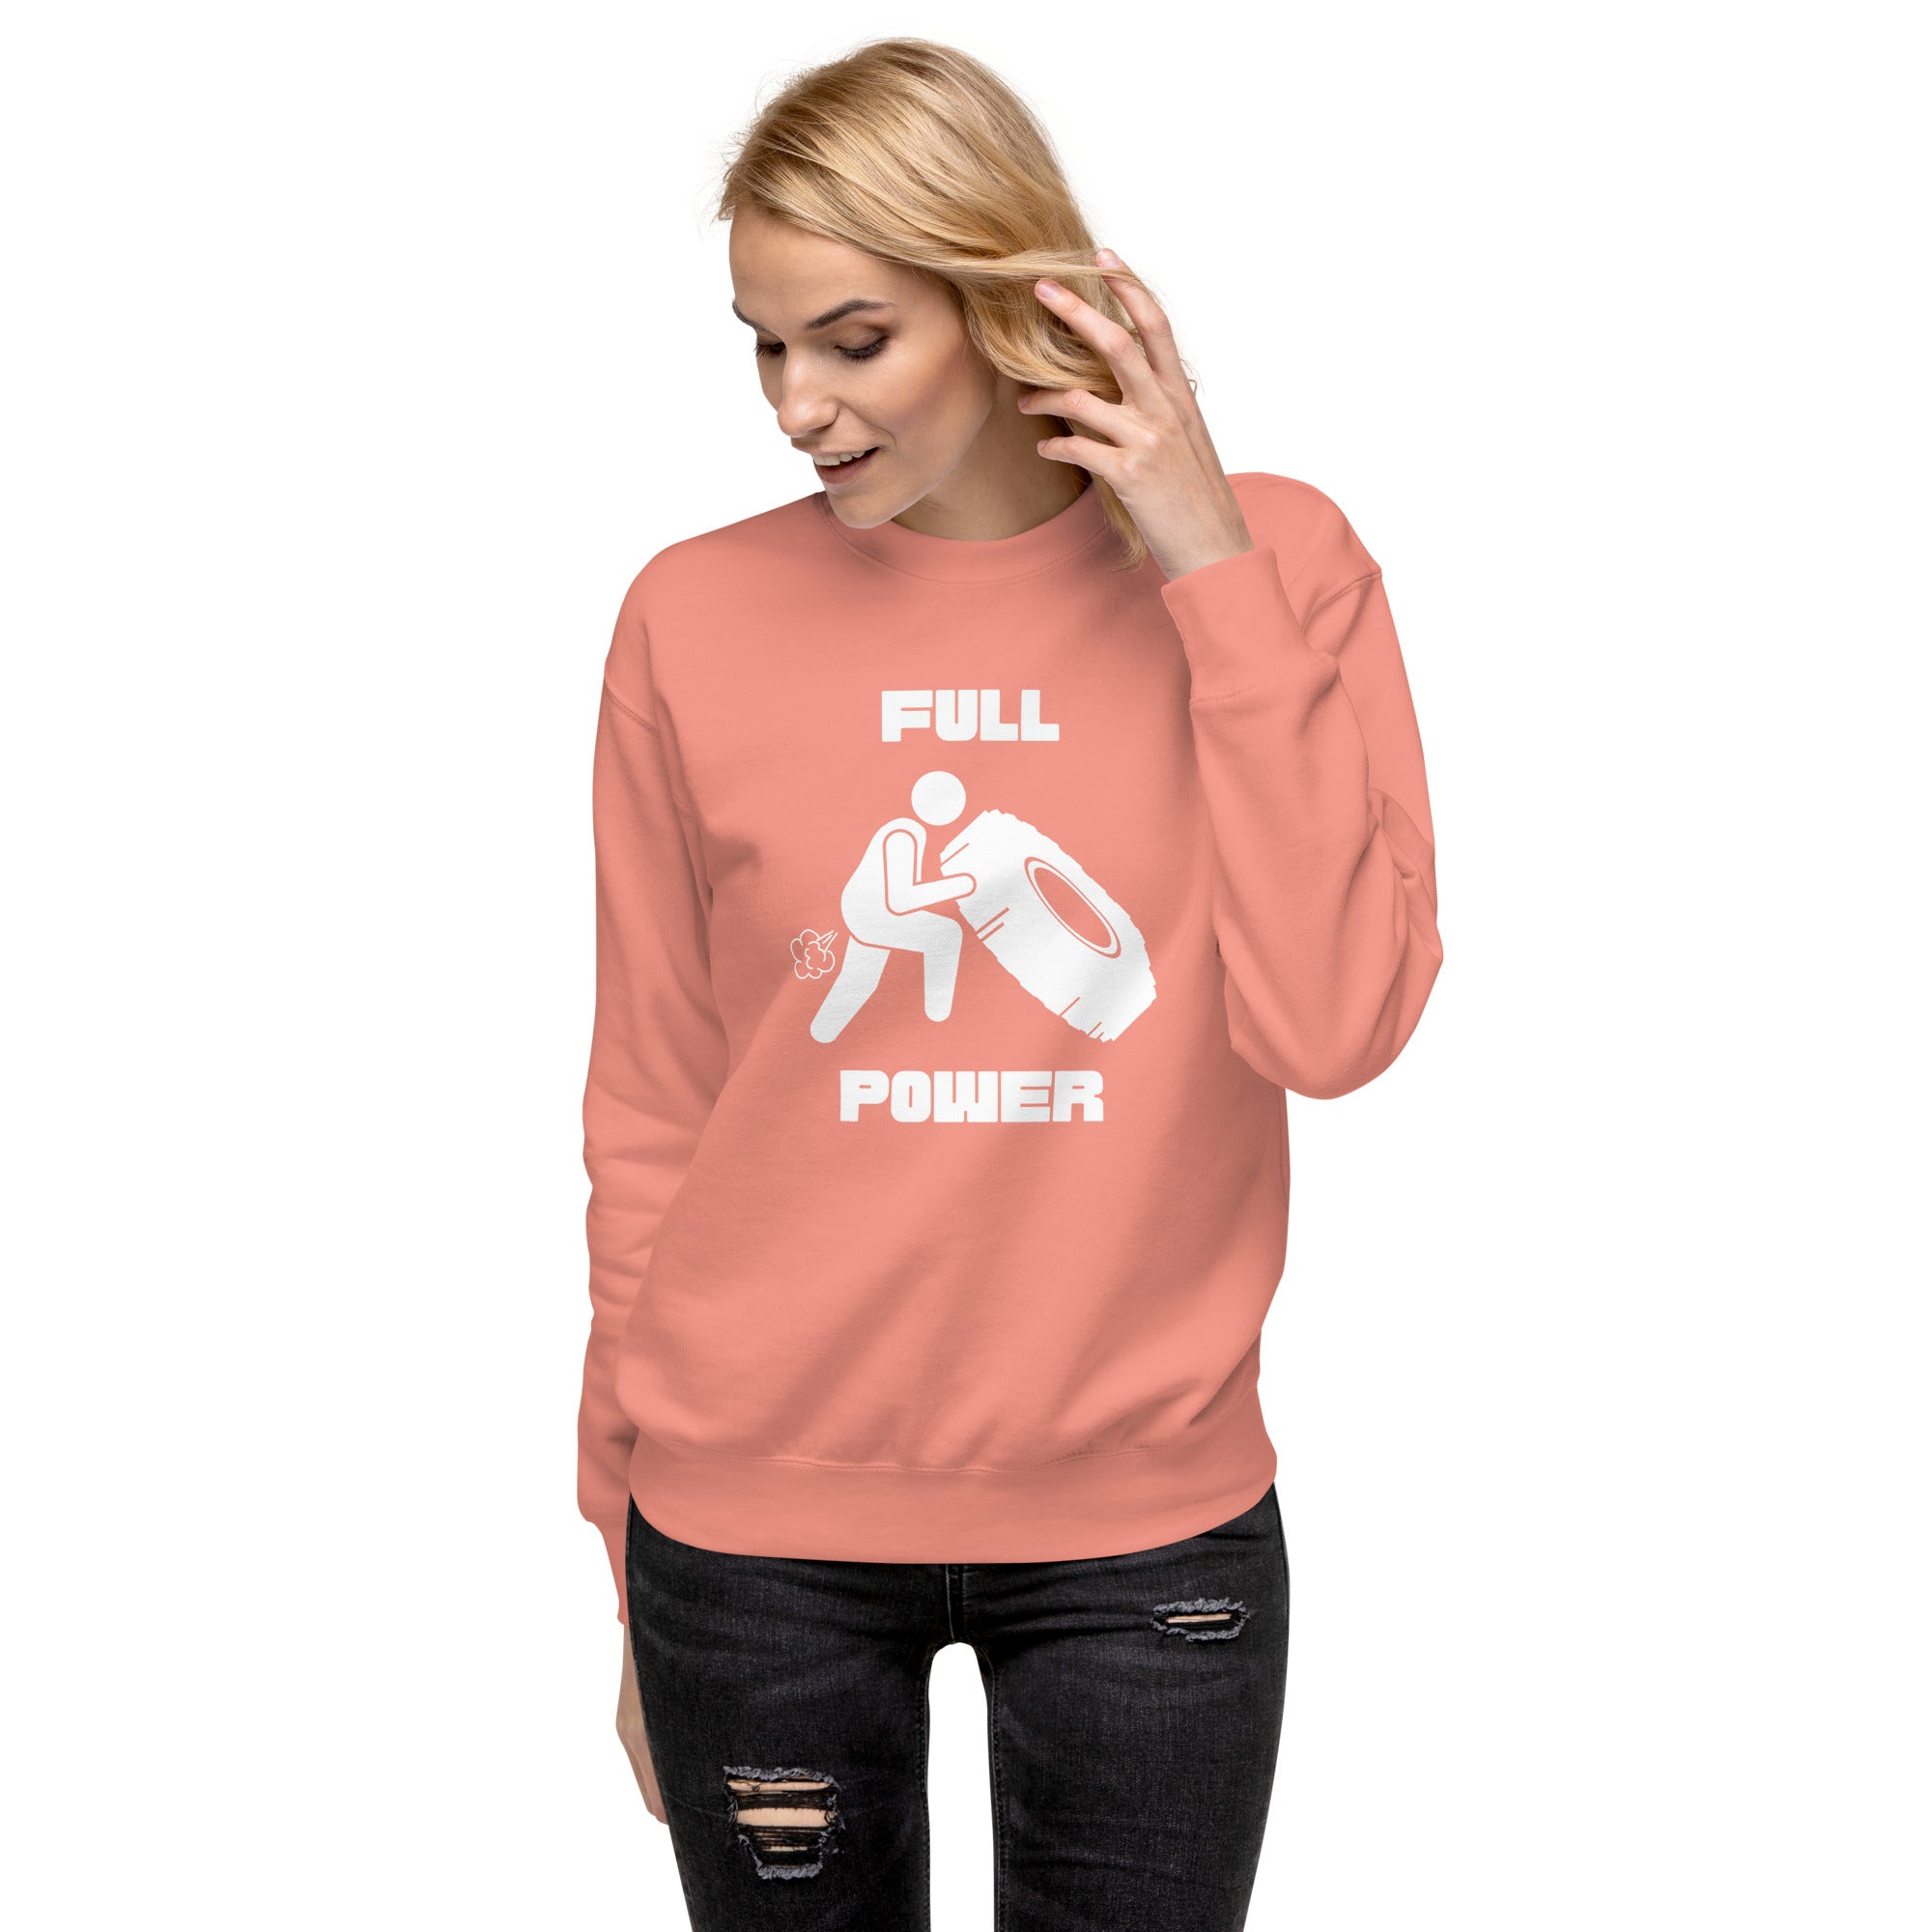 Full Power Women's Premium Sweatshirt